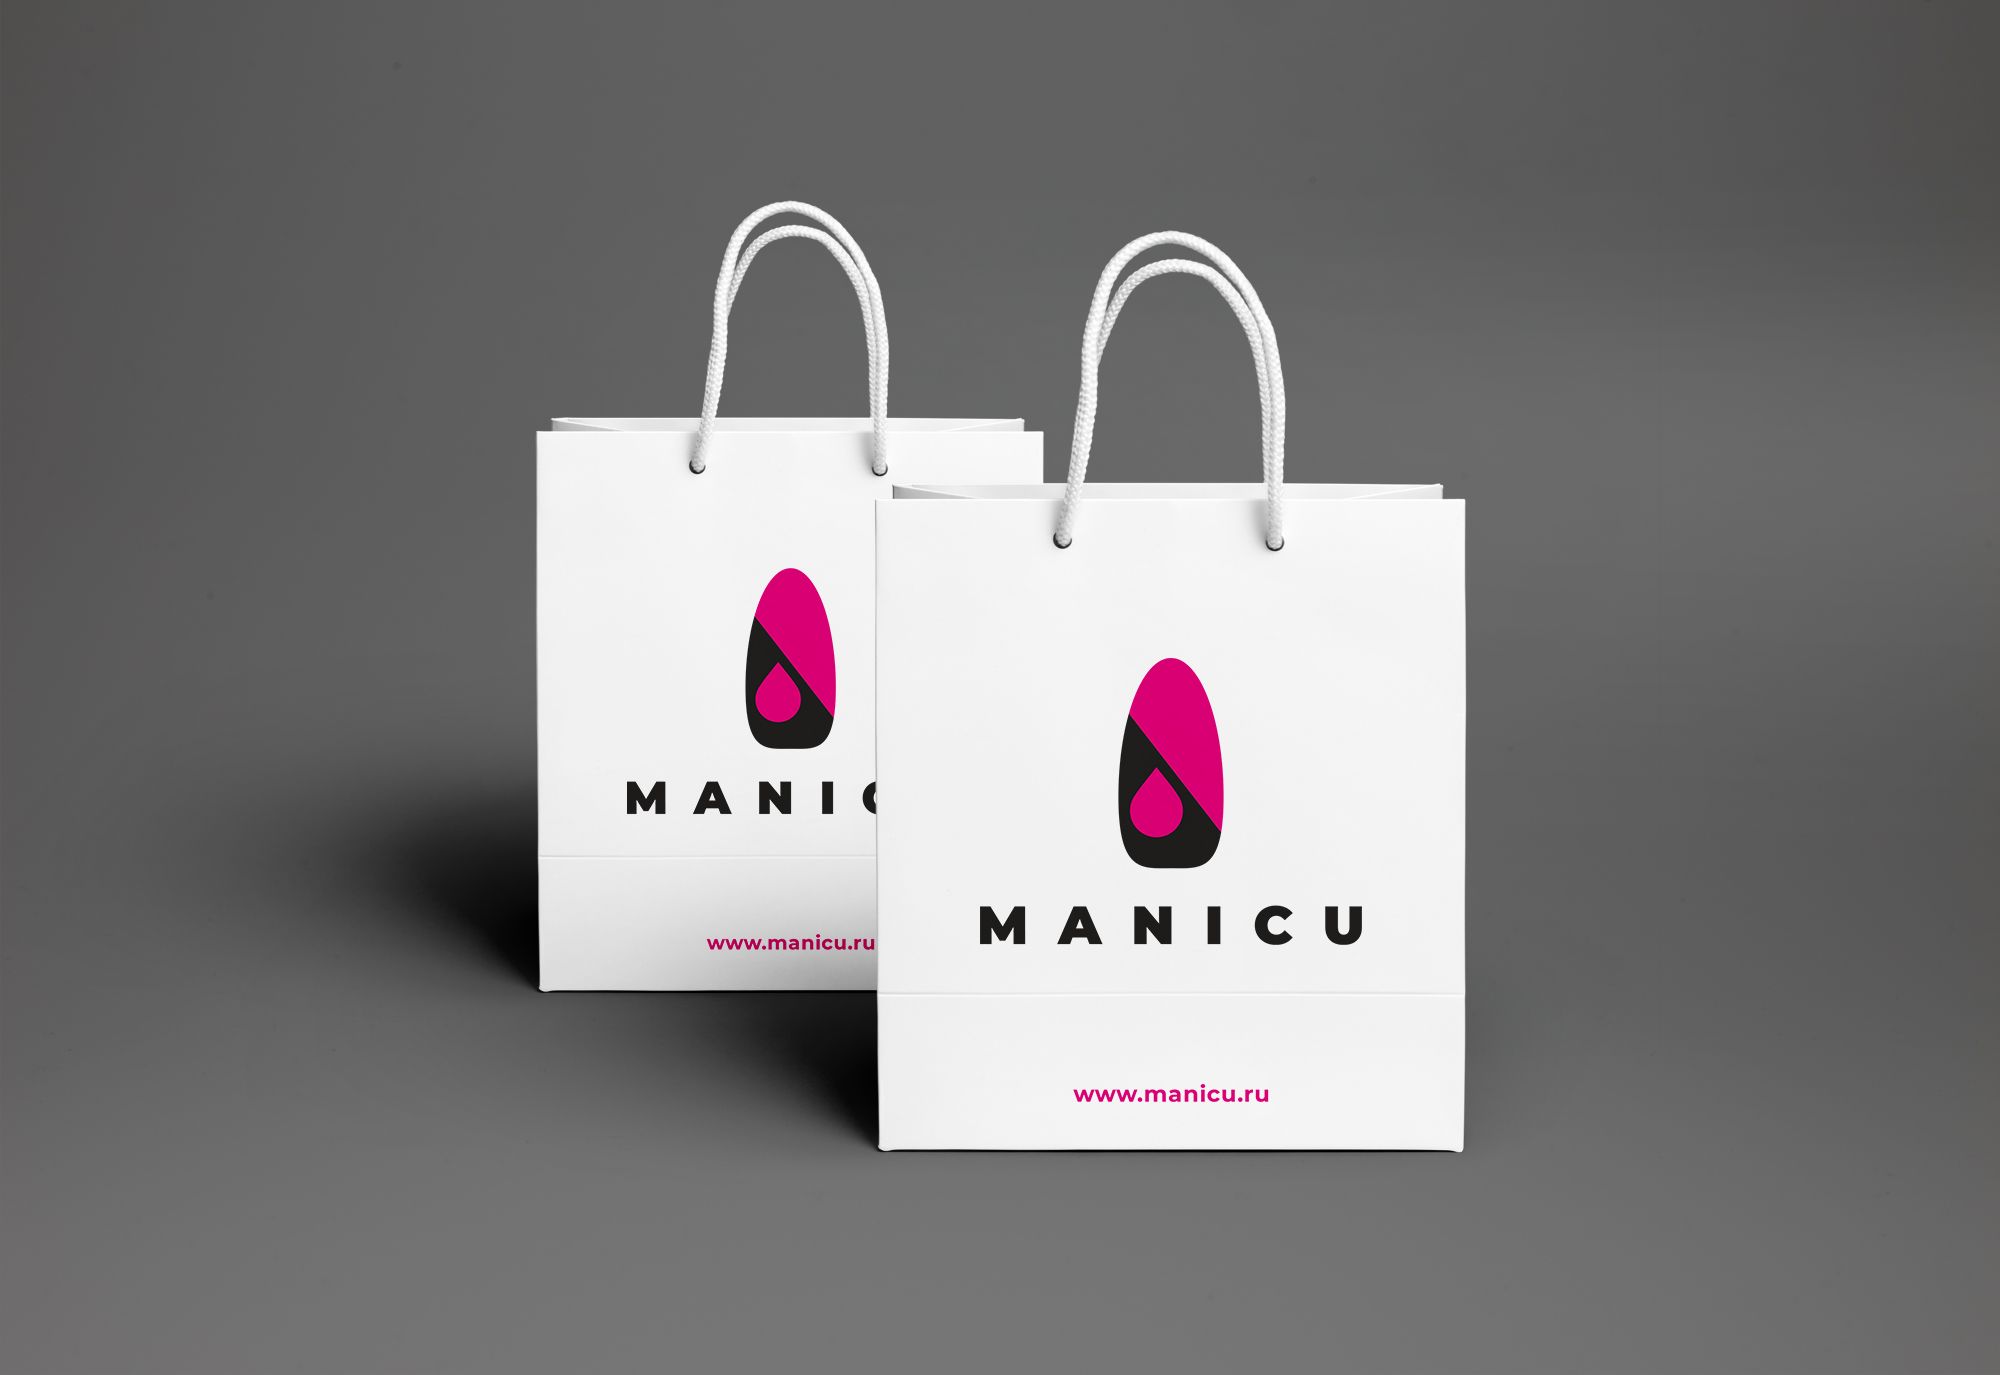 Логотип для manicu.ru , ребрендинг Маникю - дизайнер markosov